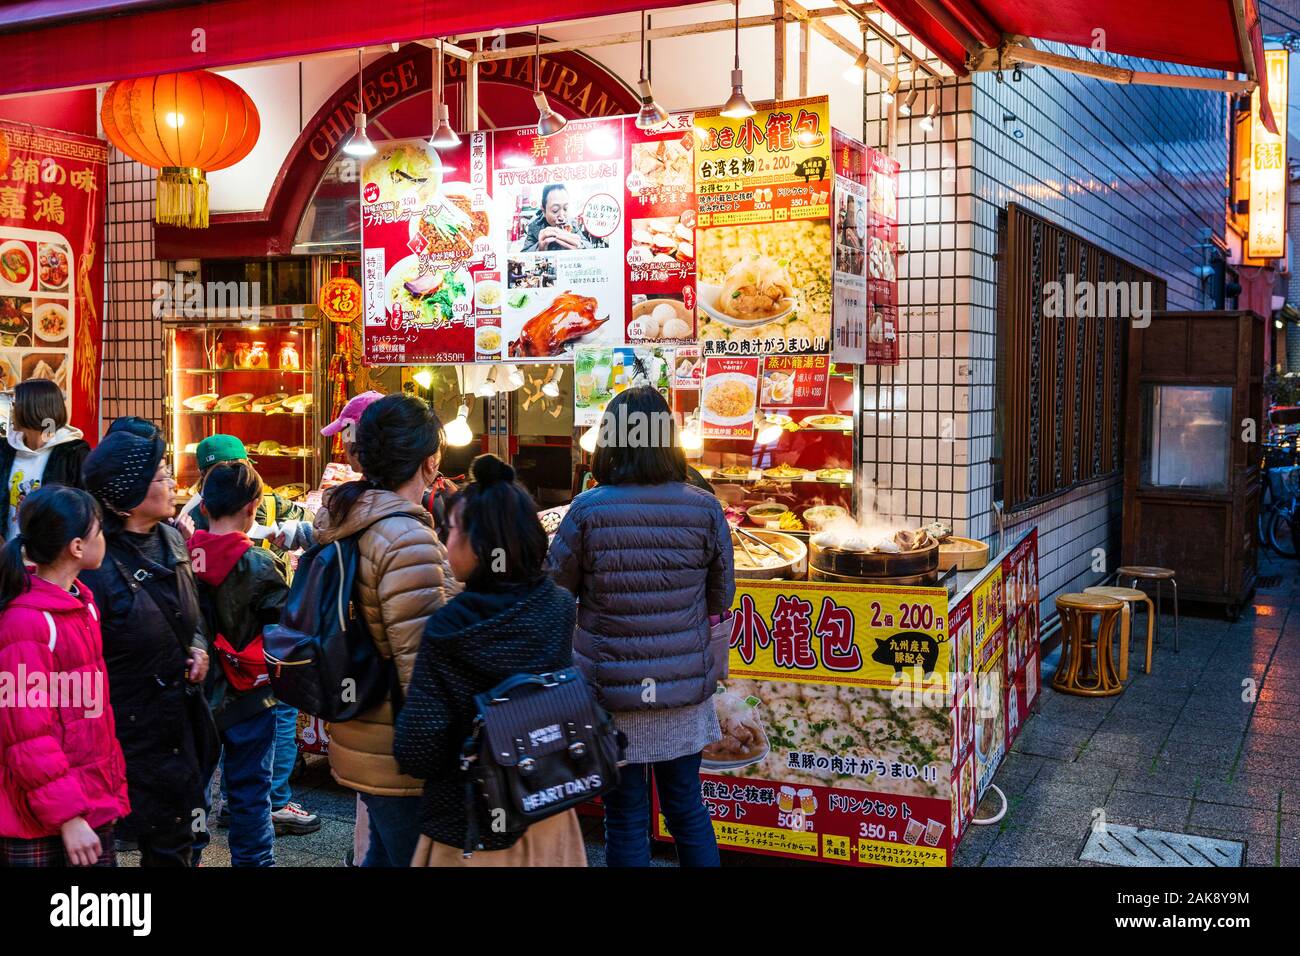 Chinatown, Nankin-Machi in Motomachi, Kobe, Giappone. Persone che acquistano cinese il cibo di strada da piccole bancarella vendendo tagliatelle, gnocchi e Gyoza. Di sera. Foto Stock